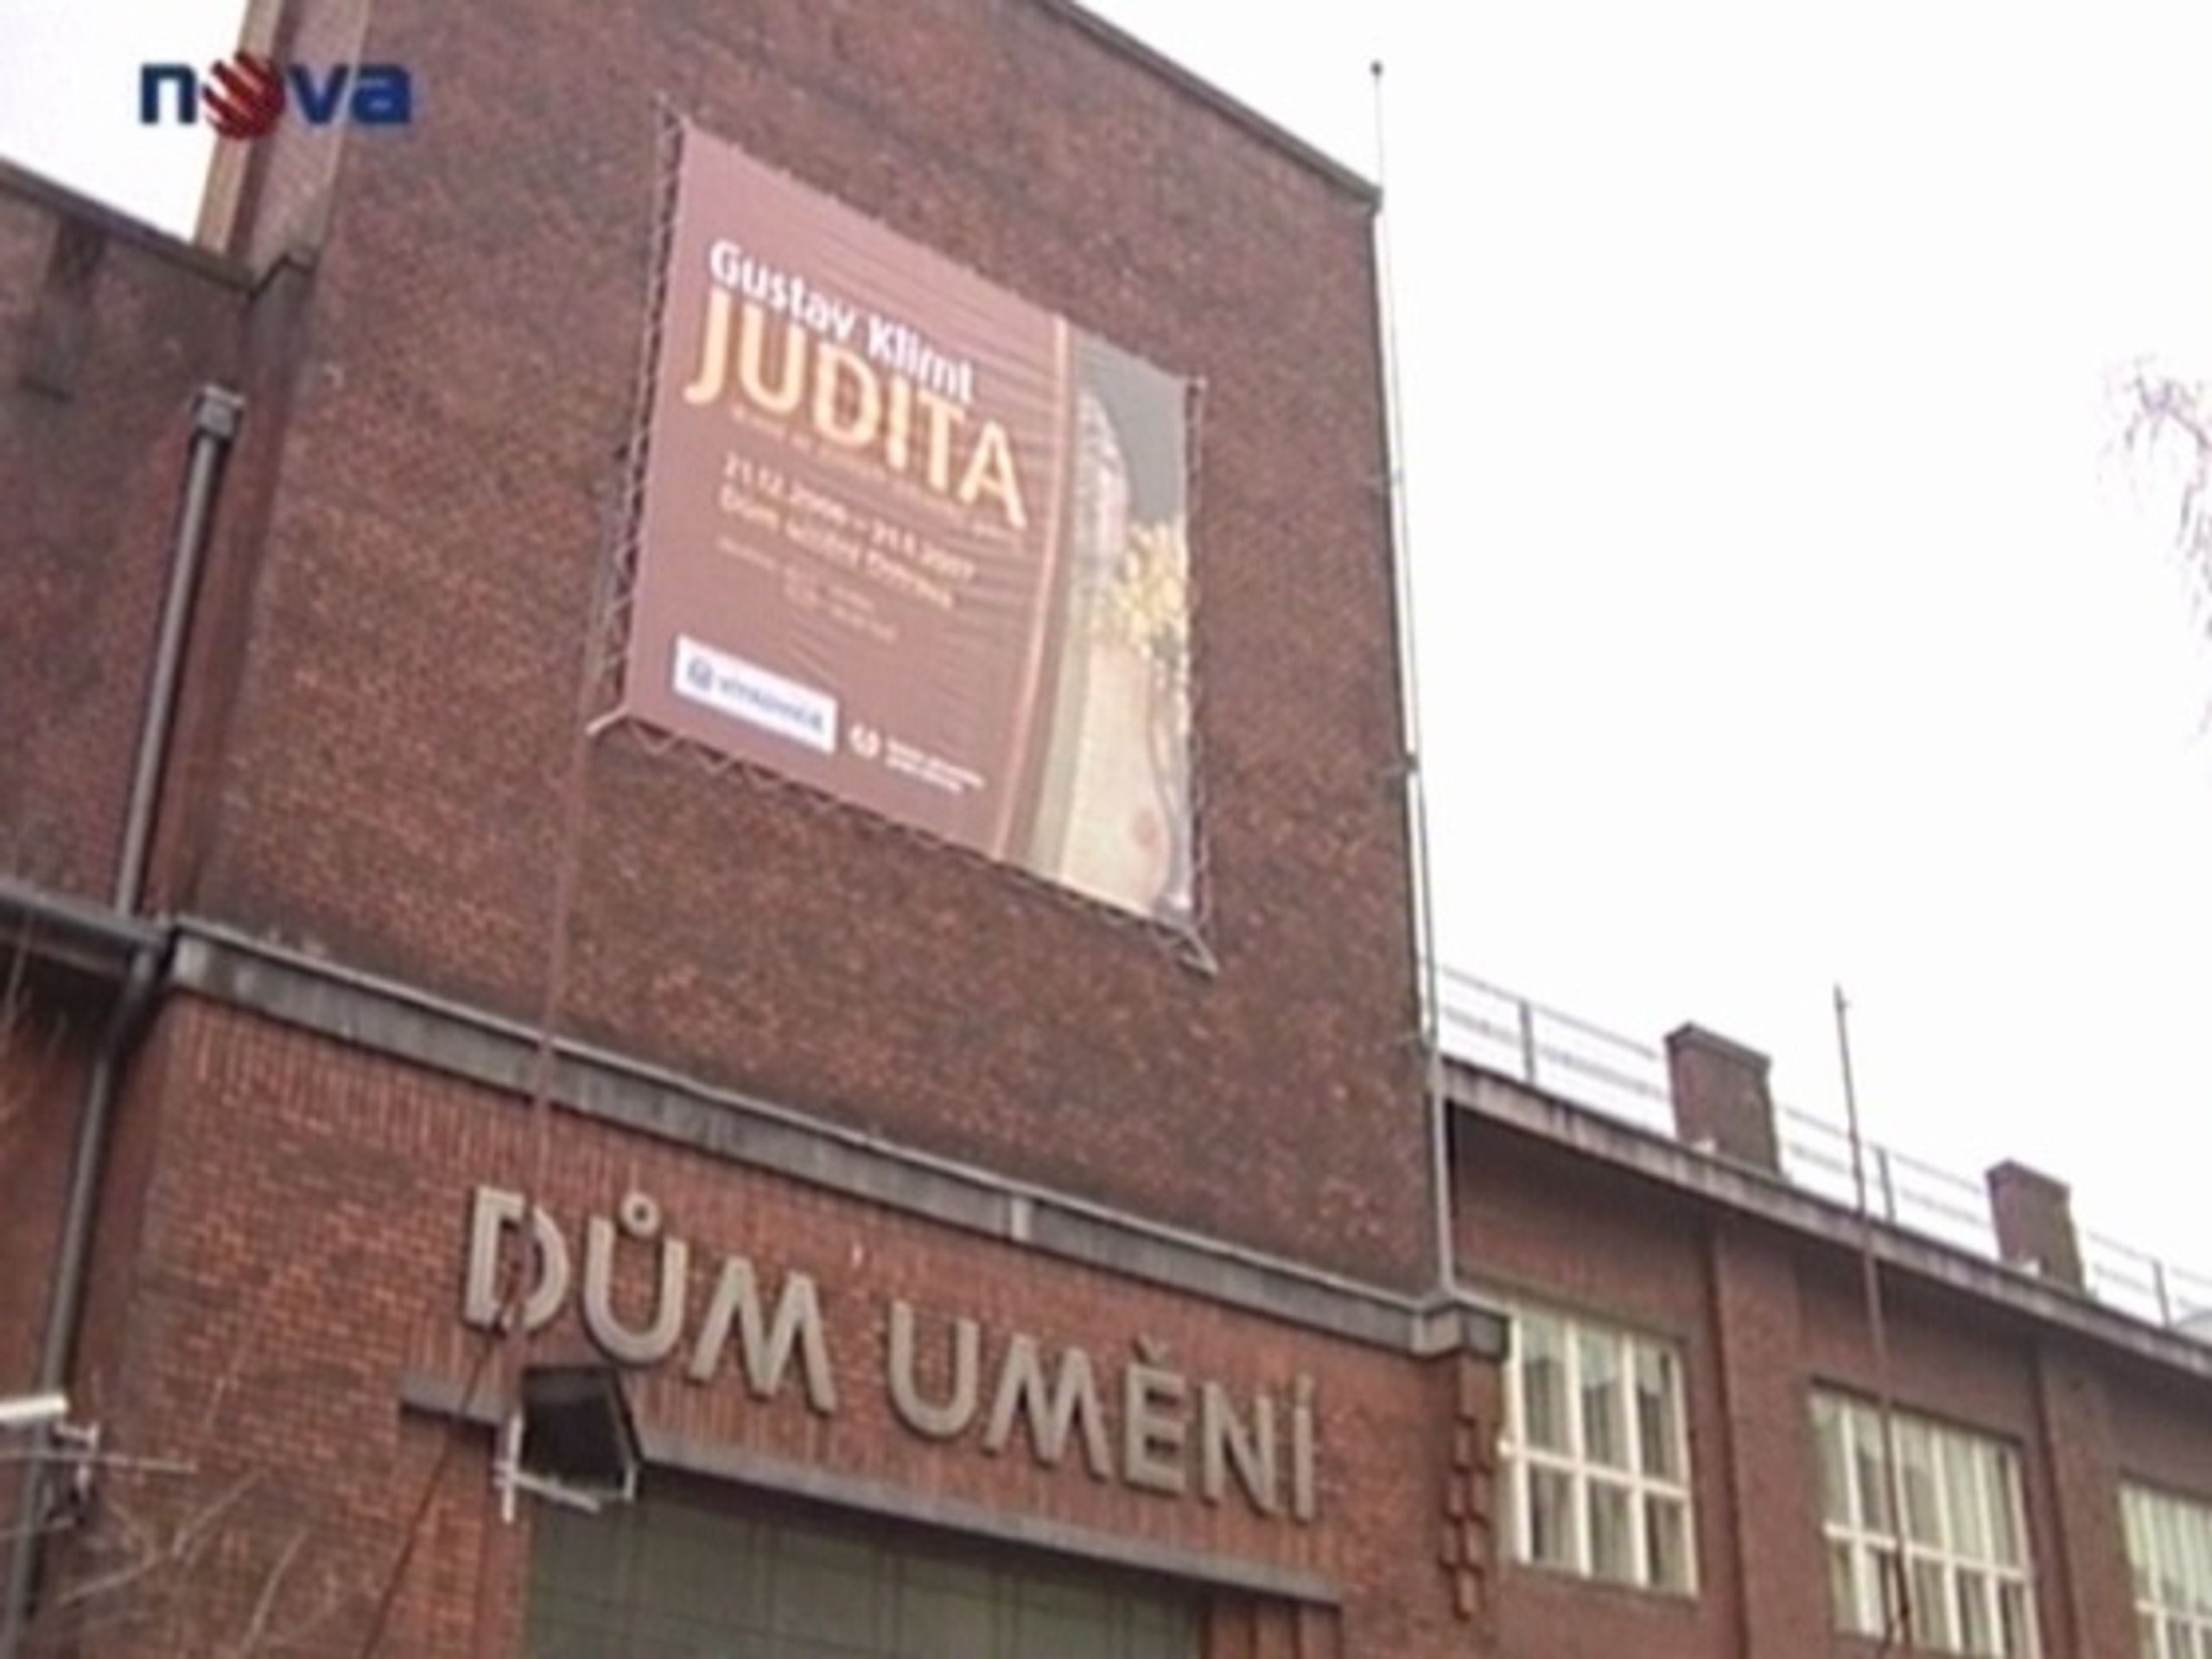 Gustav Klimt v Ostravě - Klimtův malířský klenot vystaven v Ostravě (2/3)